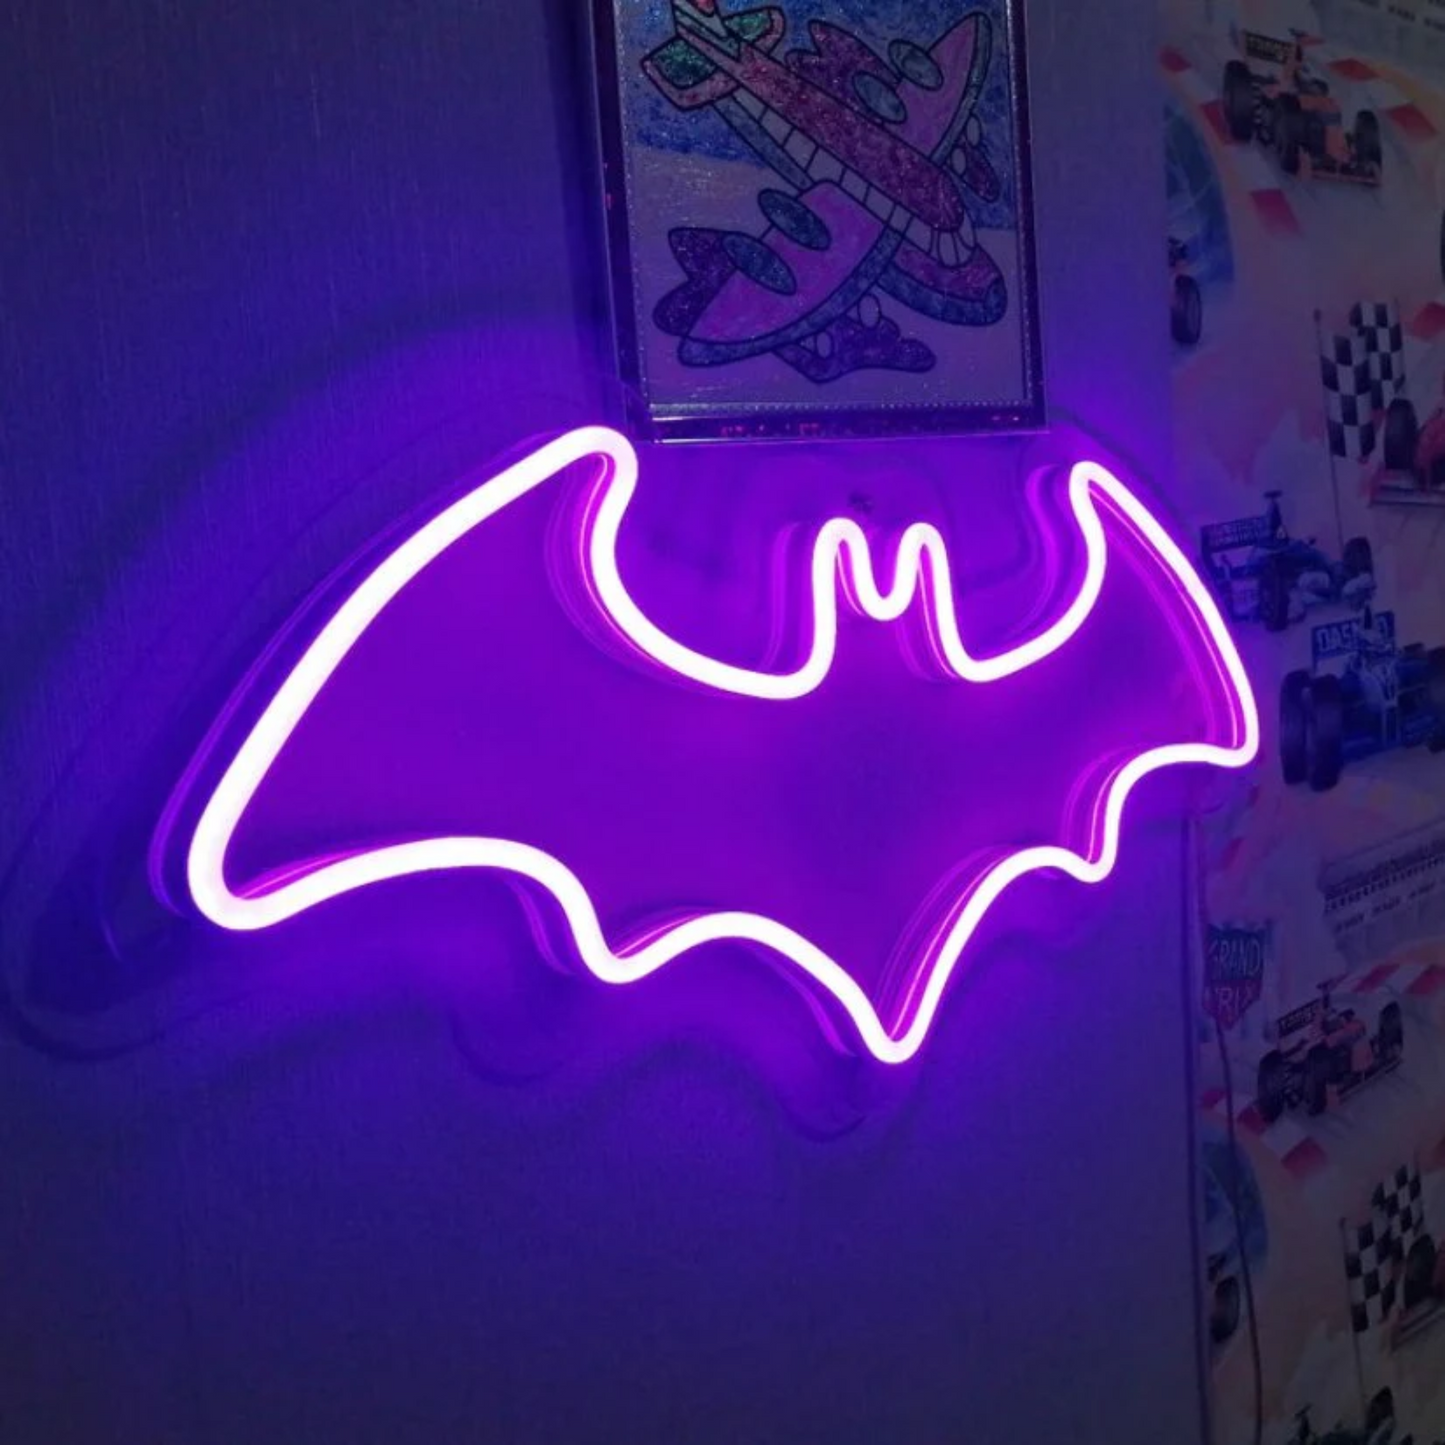 Batman Neon Sign - Cheers to Crime Fighting Adventures